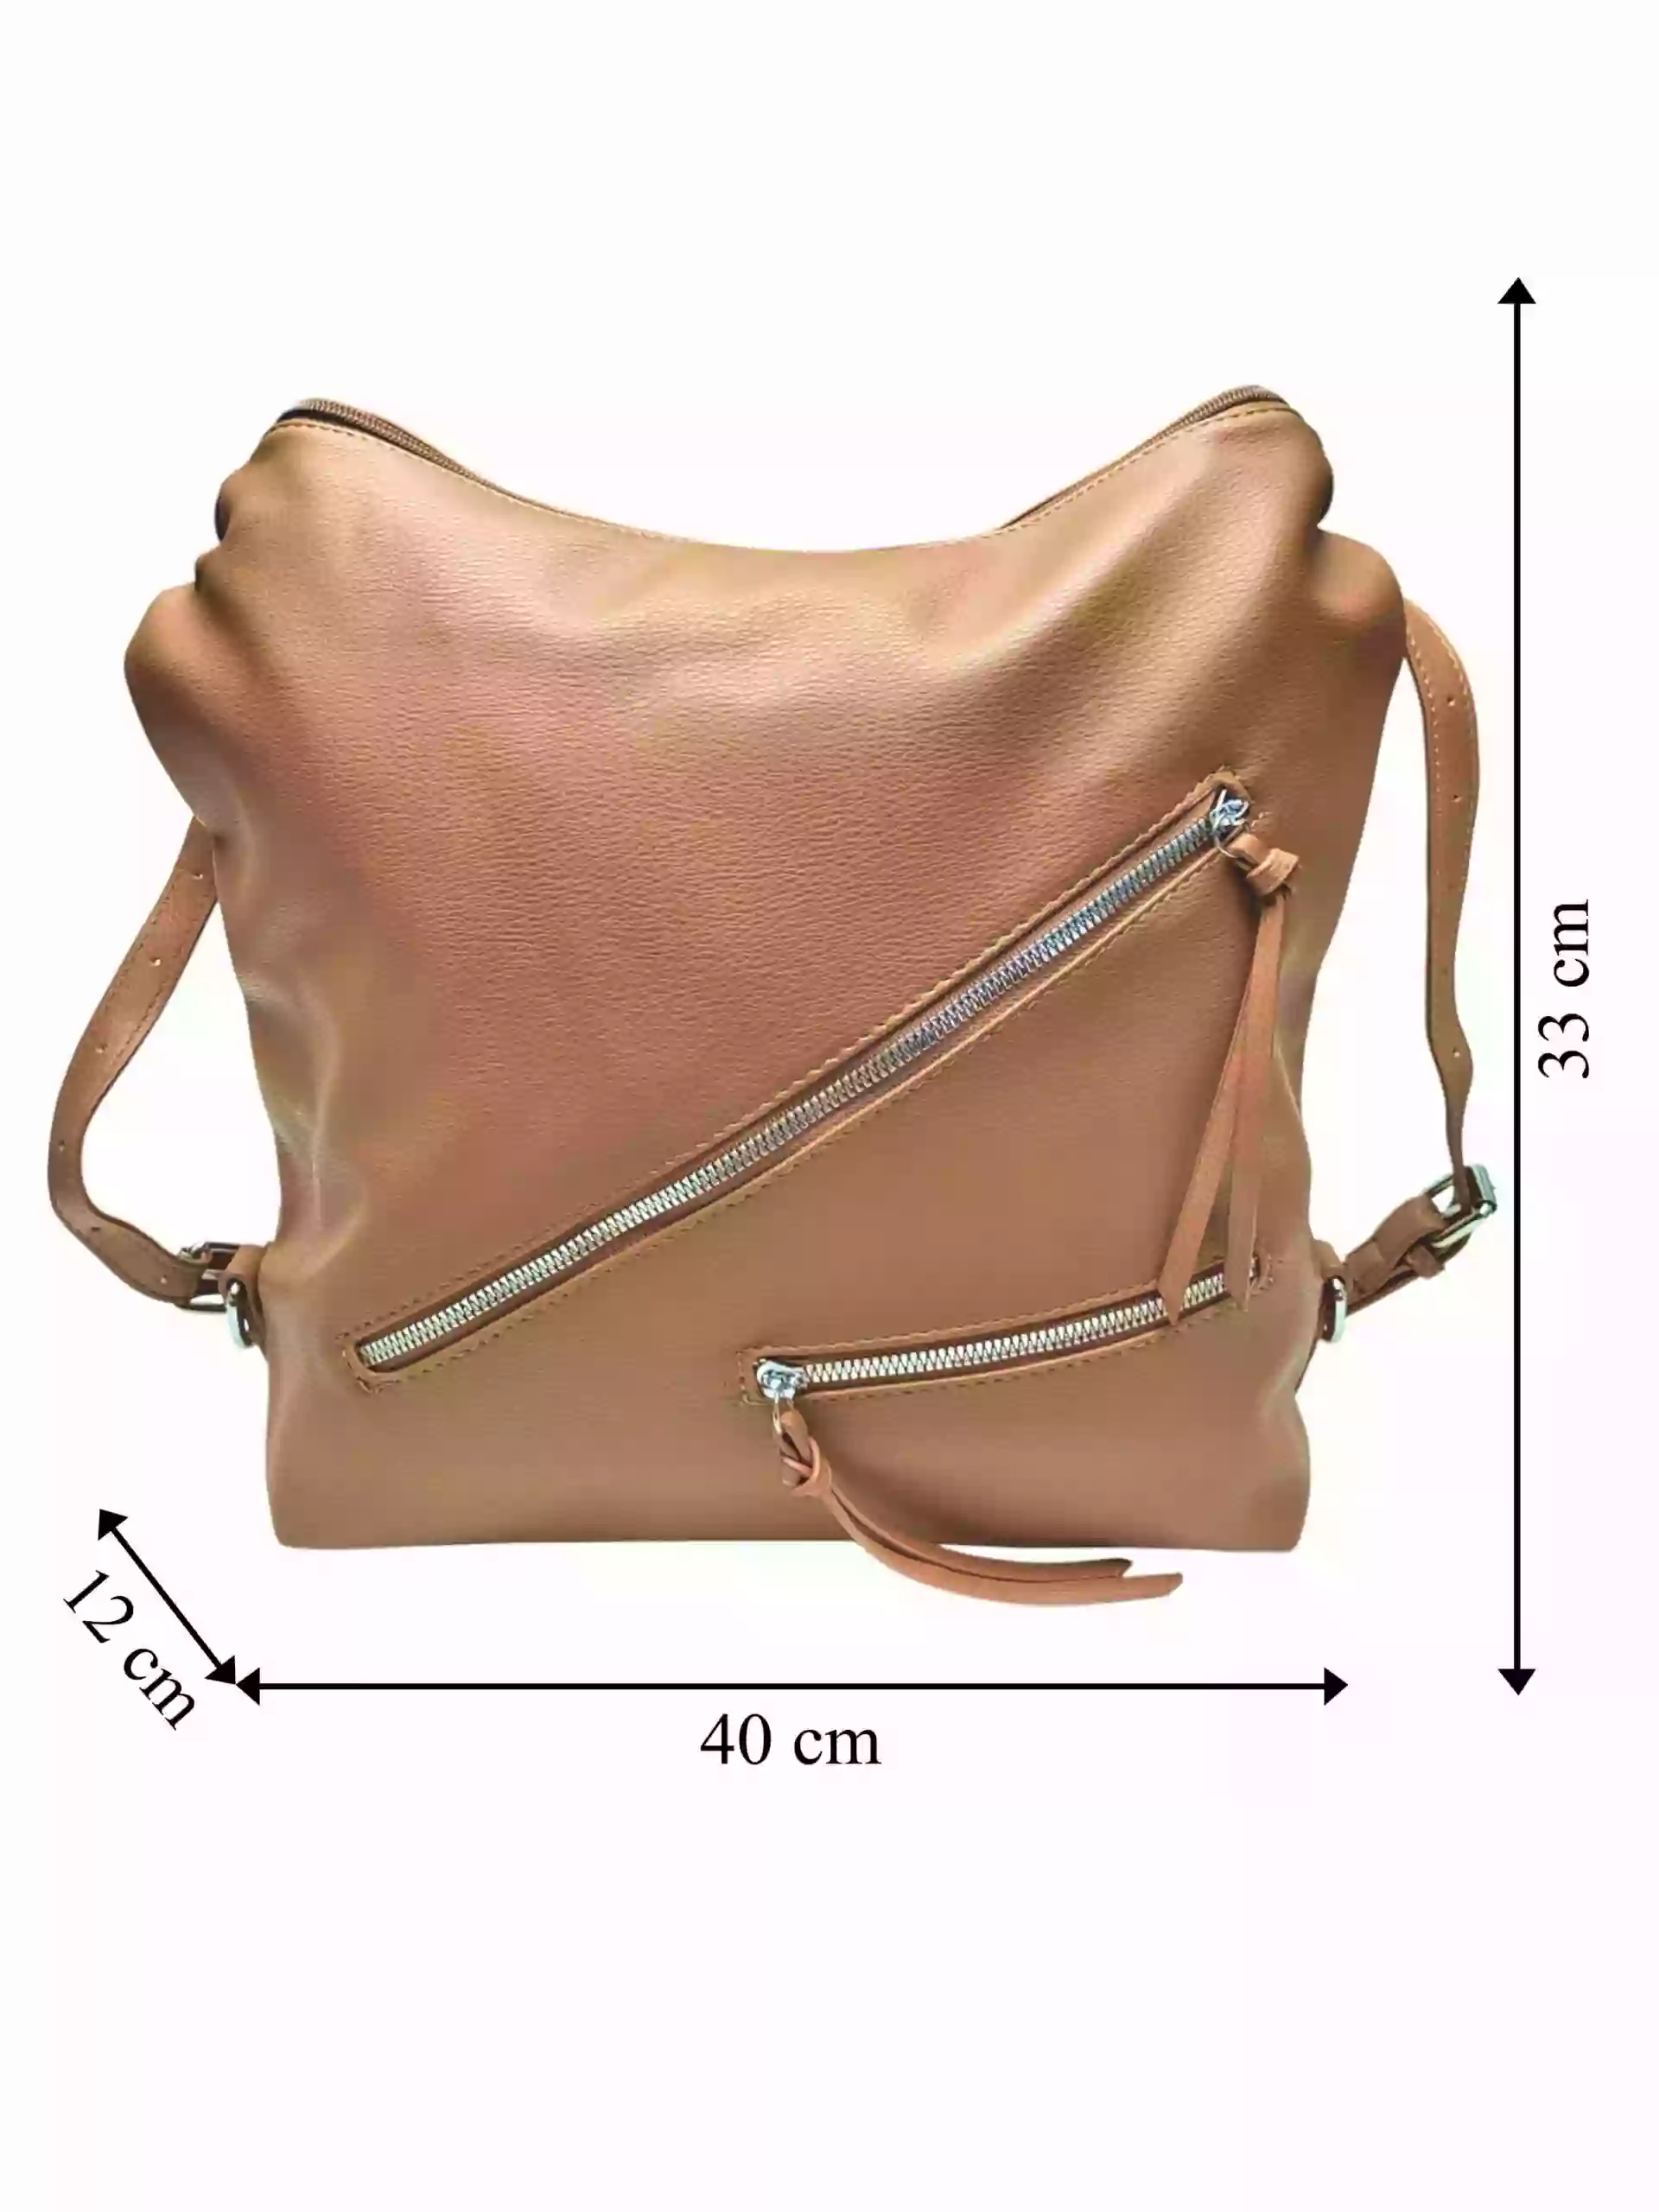 Velká středně hnědá kabelka a batoh v jednom, Tapple, X368, přední strana kabelko-batohu 2v1 s rozměry